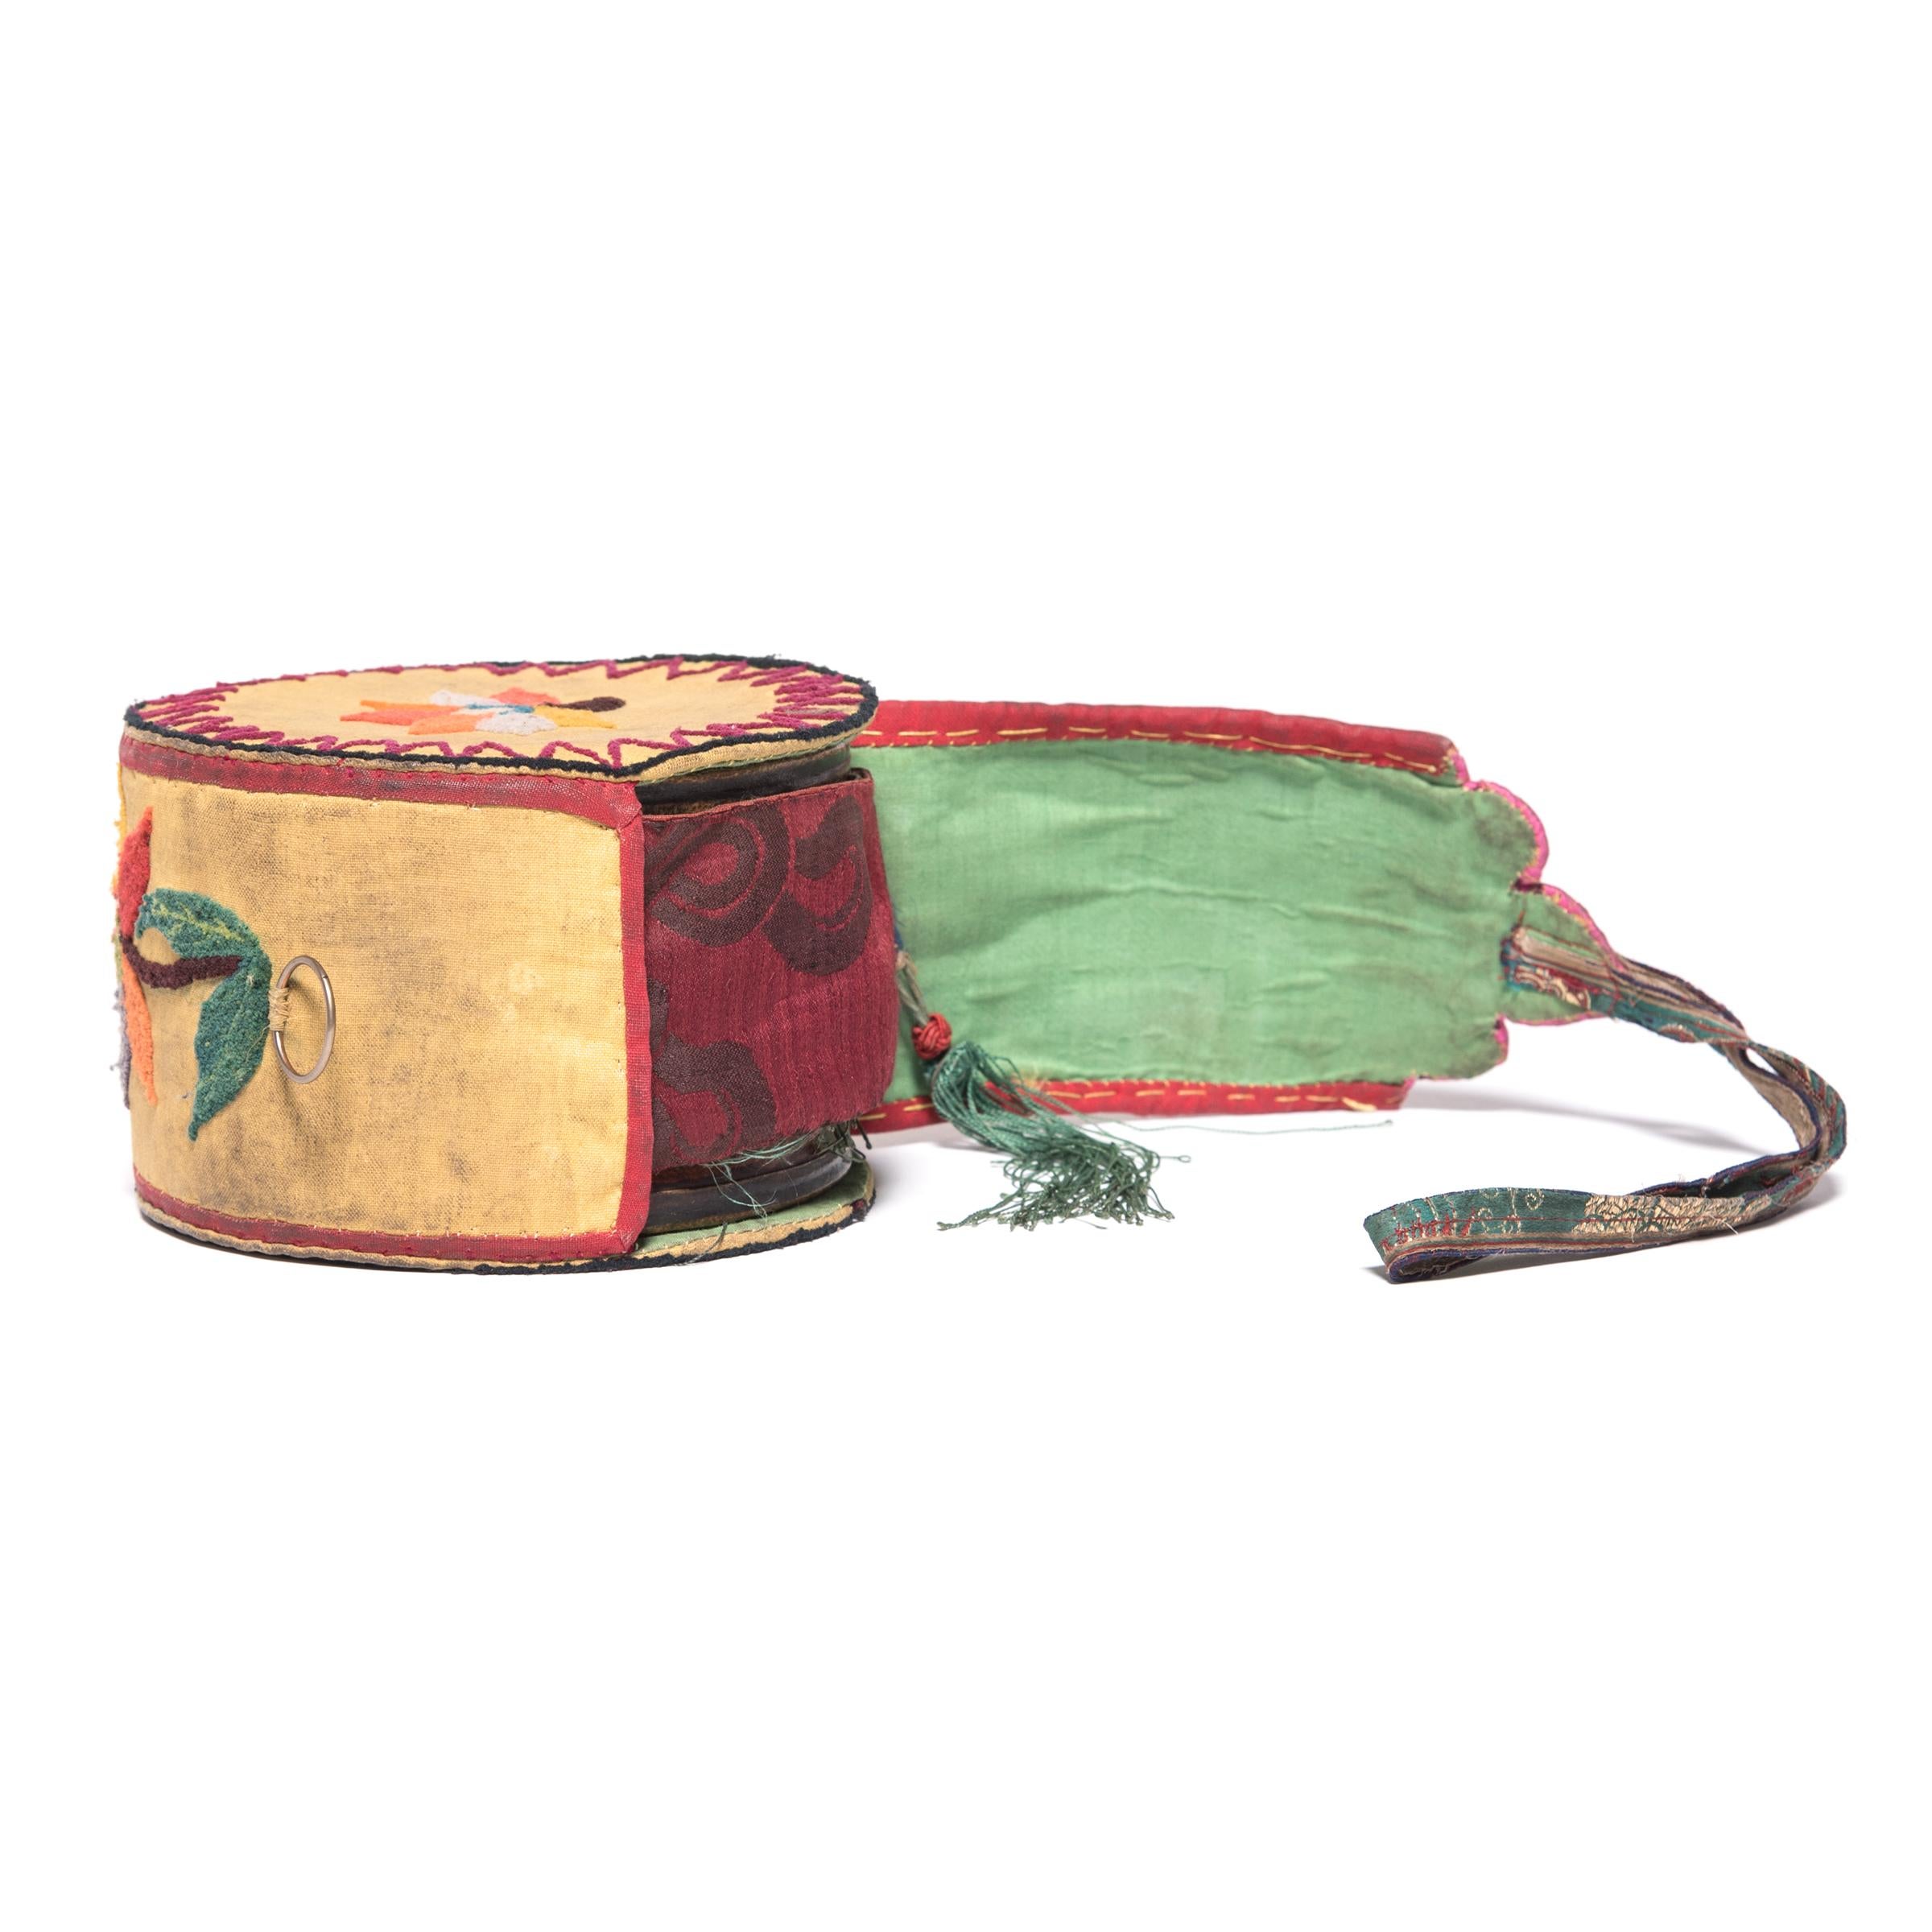 Tibetan Damaru Drum on Stand, c. 1850 For Sale 6